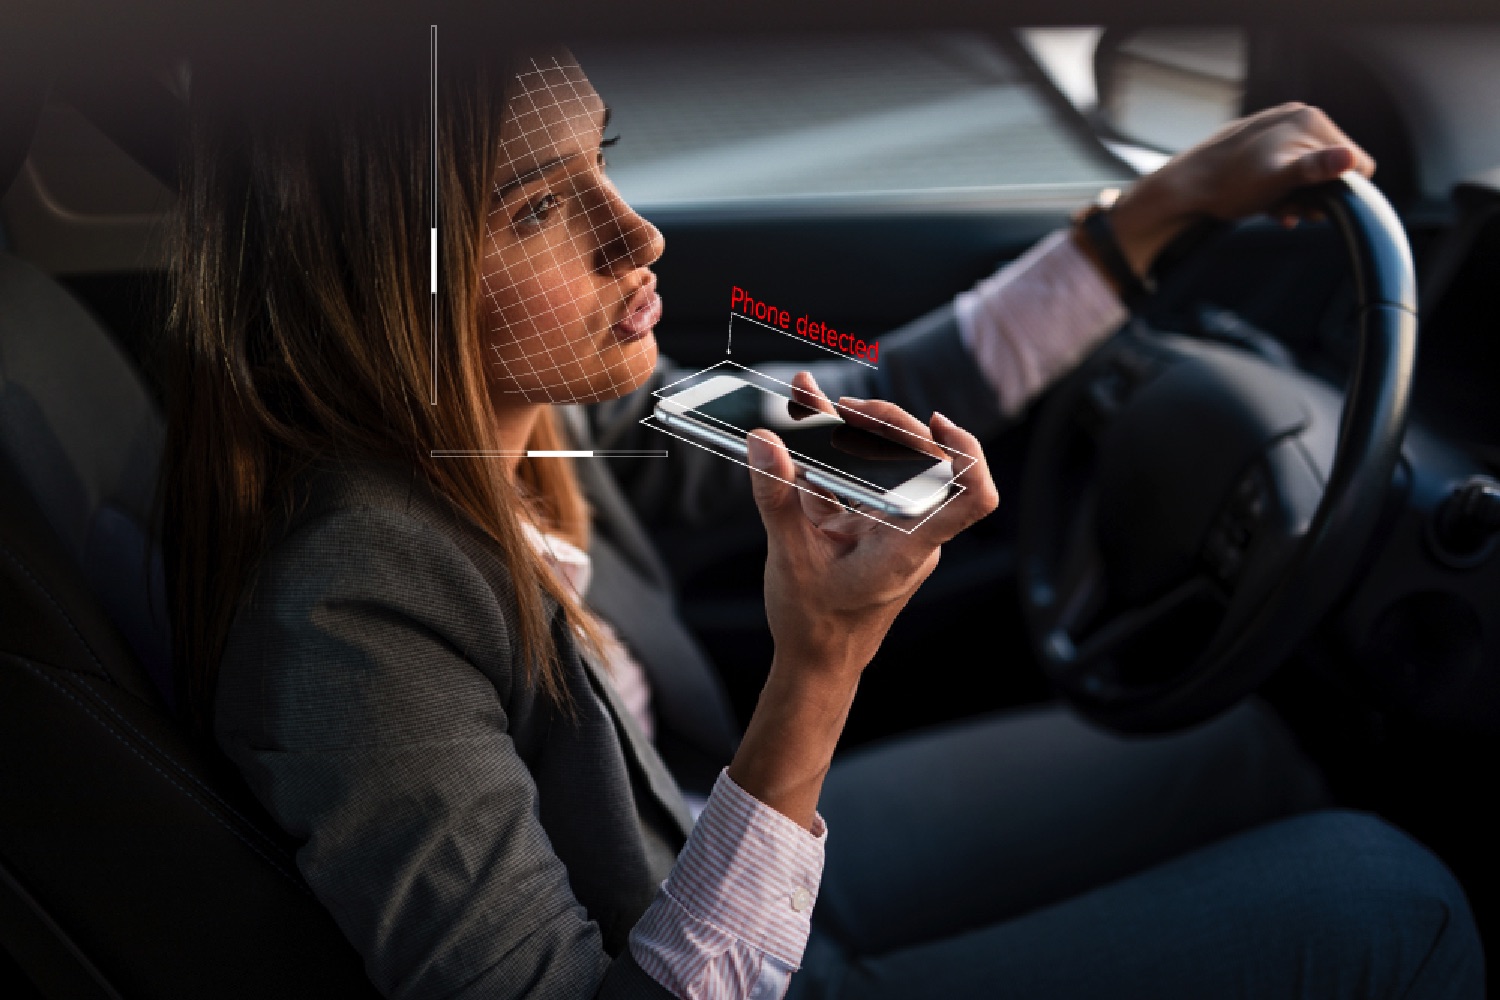 Можно курить в машине. Разговор в машине. Человек в машине с телефоном. Девушка с мобильным телефоном. Курит за рулем.